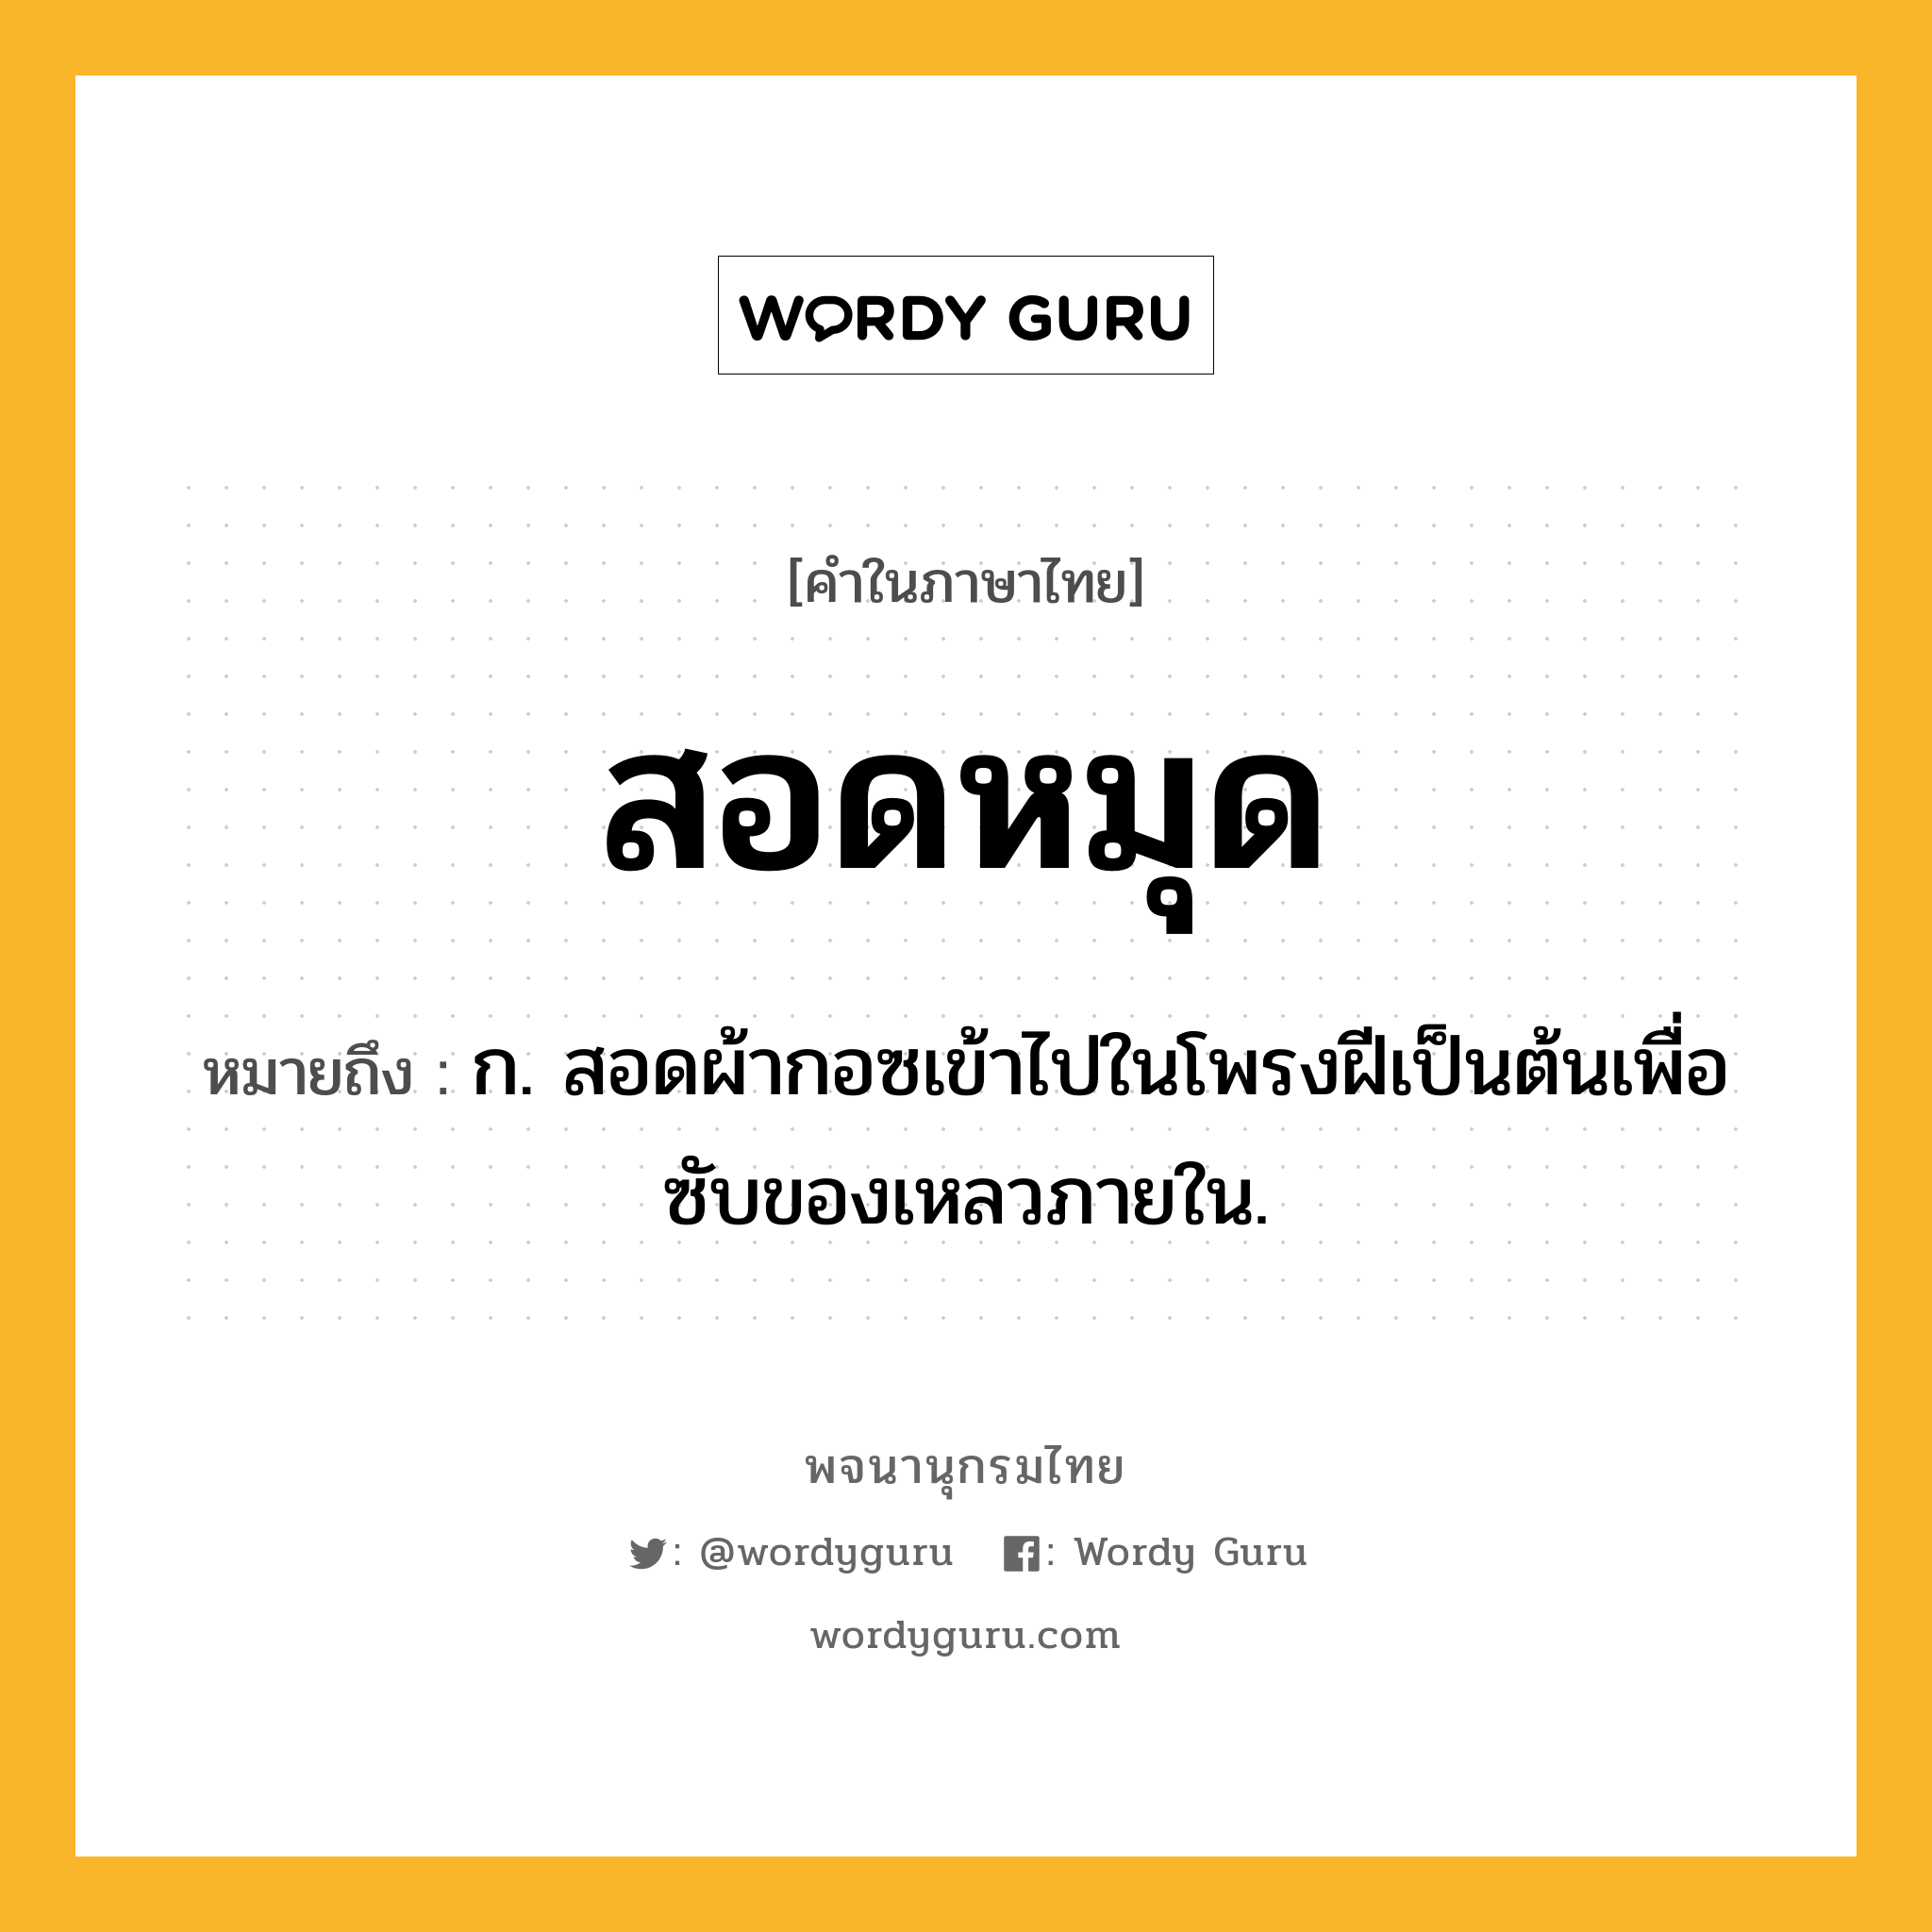 สอดหมุด หมายถึงอะไร?, คำในภาษาไทย สอดหมุด หมายถึง ก. สอดผ้ากอซเข้าไปในโพรงฝีเป็นต้นเพื่อซับของเหลวภายใน.